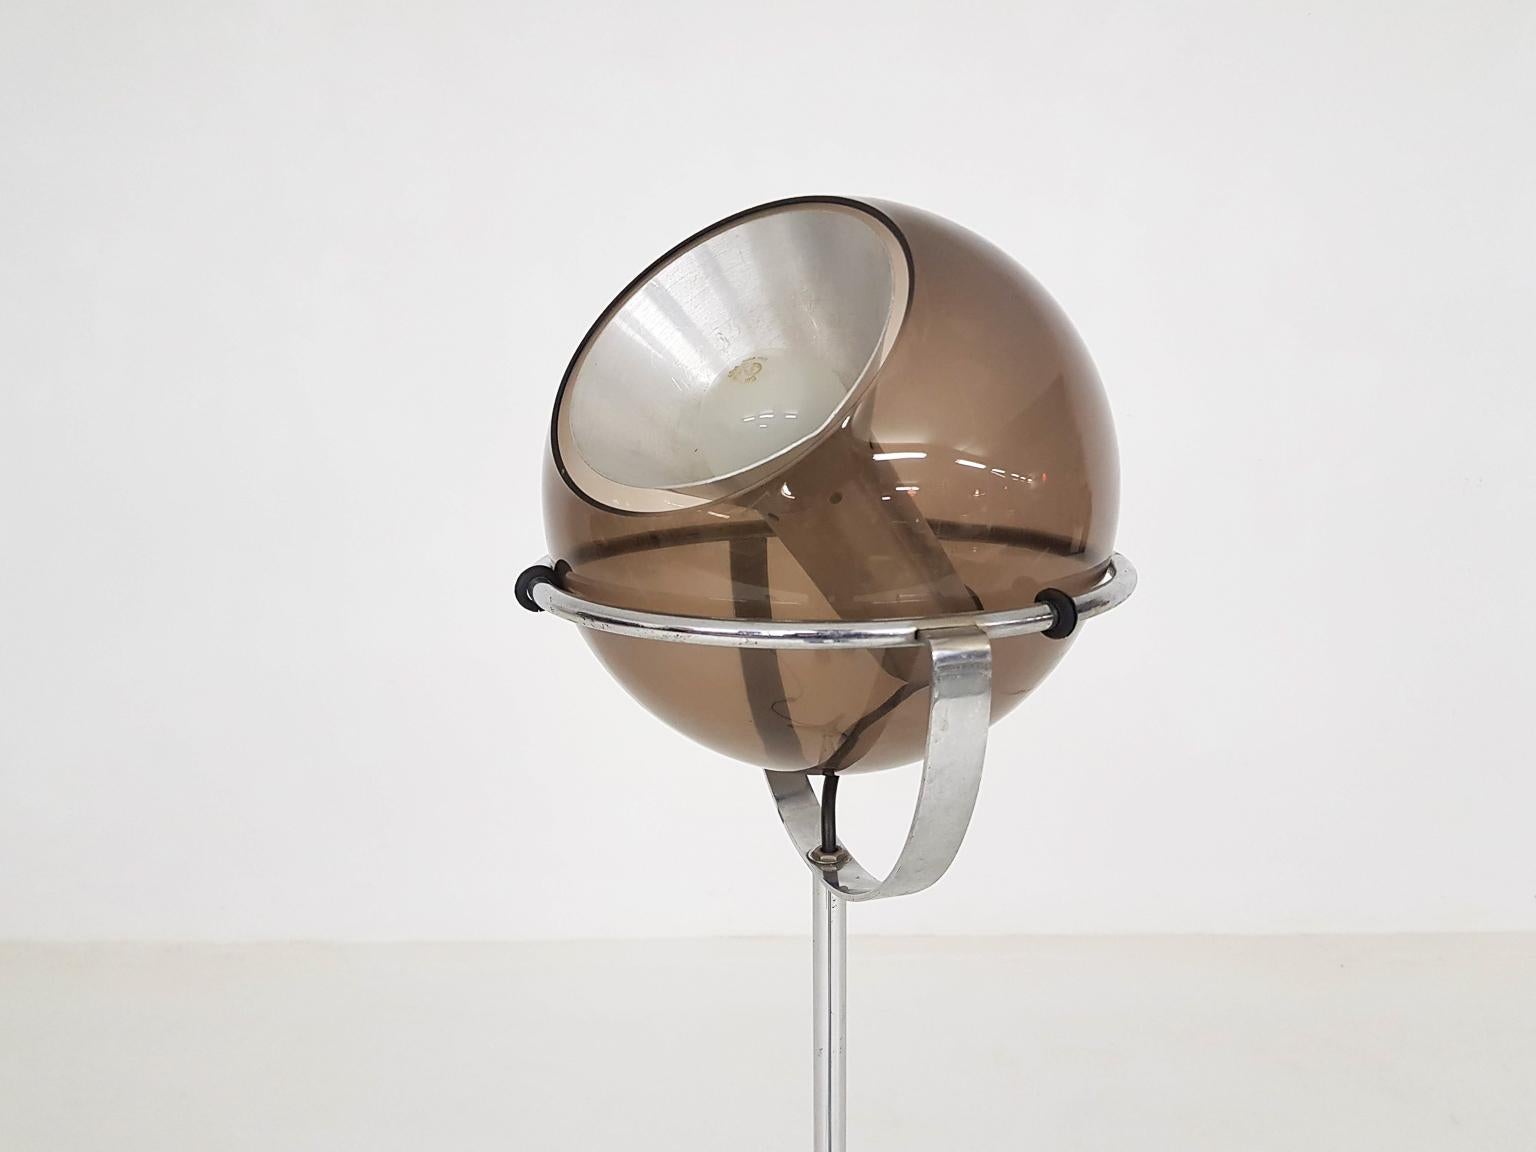 Metal Adjustable Glass Globe Floor Lamp by Frank Ligtelijn for RAAK, Dutch Design 1961